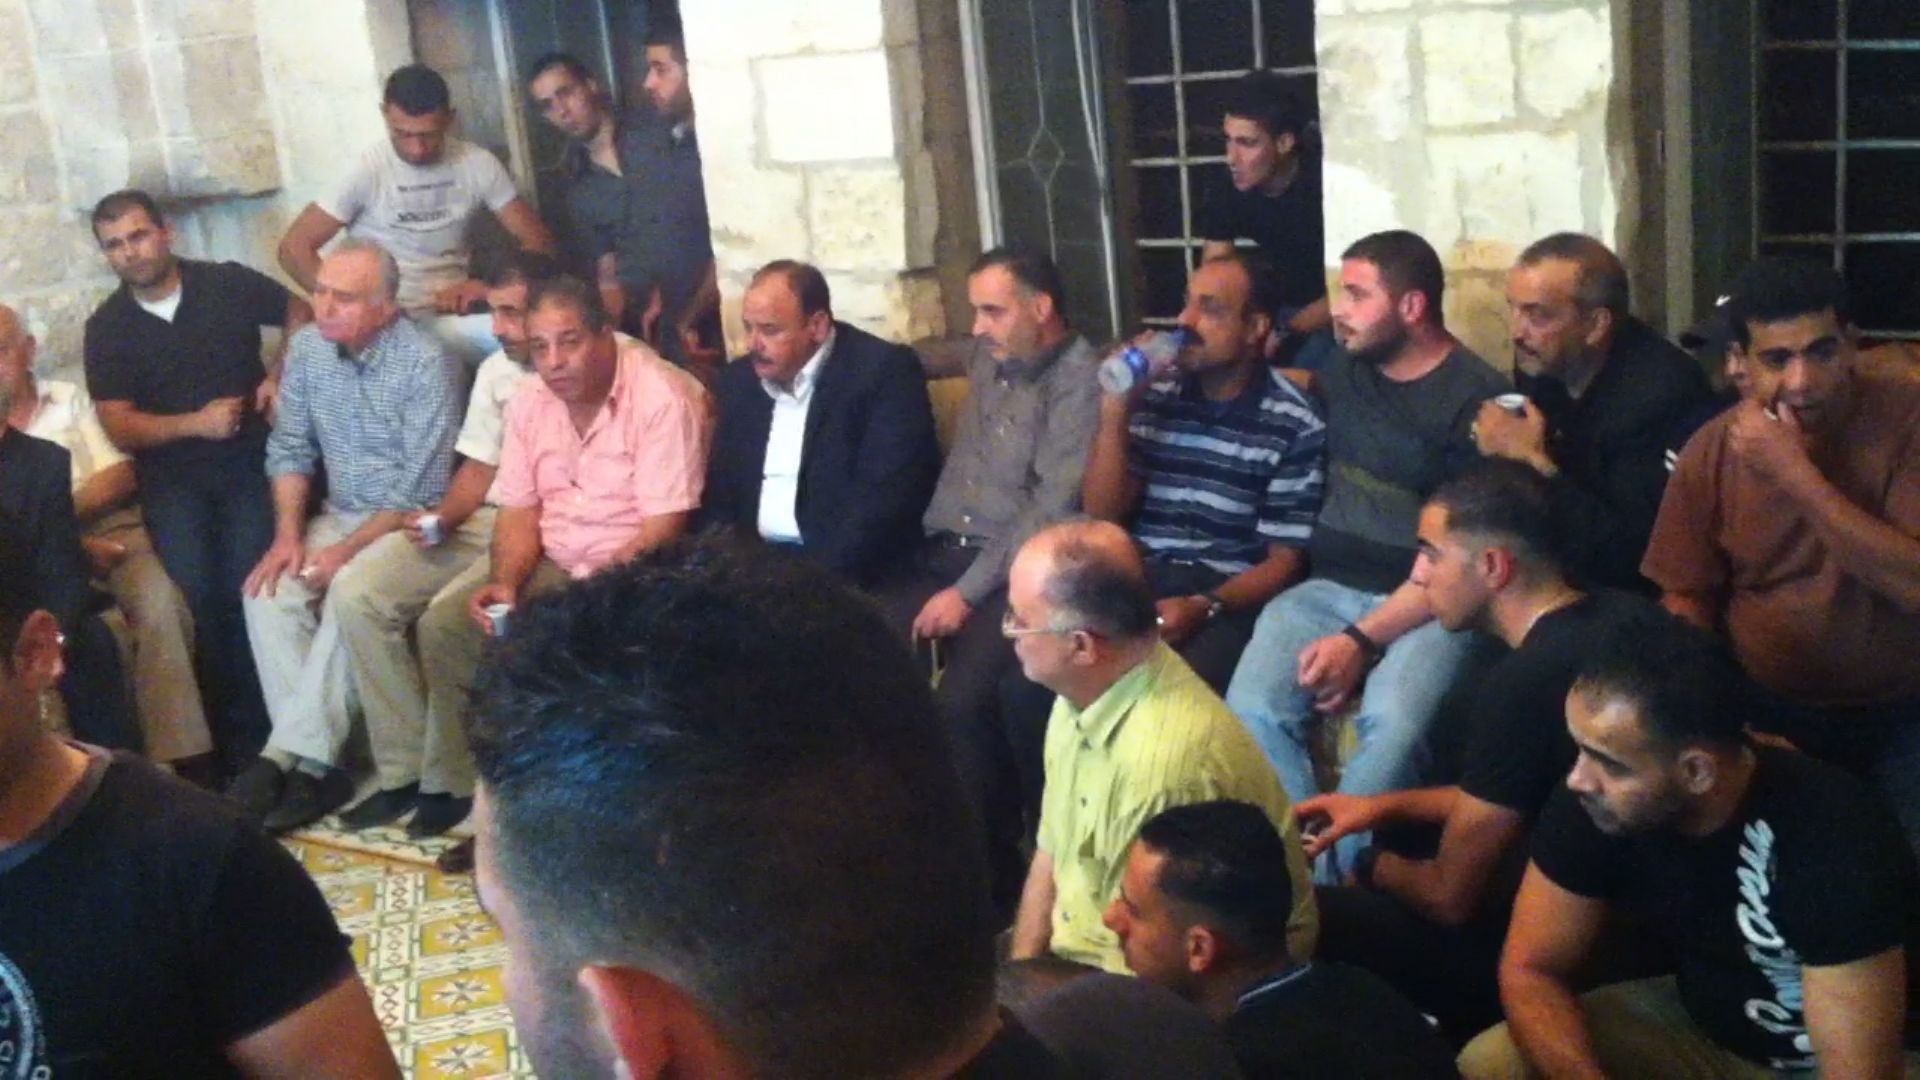 صورة اجتماع عام لأهالي المدينة مع رئيس البلدية المرحوم غسان الشكعة في الديوان : 21/10/2012